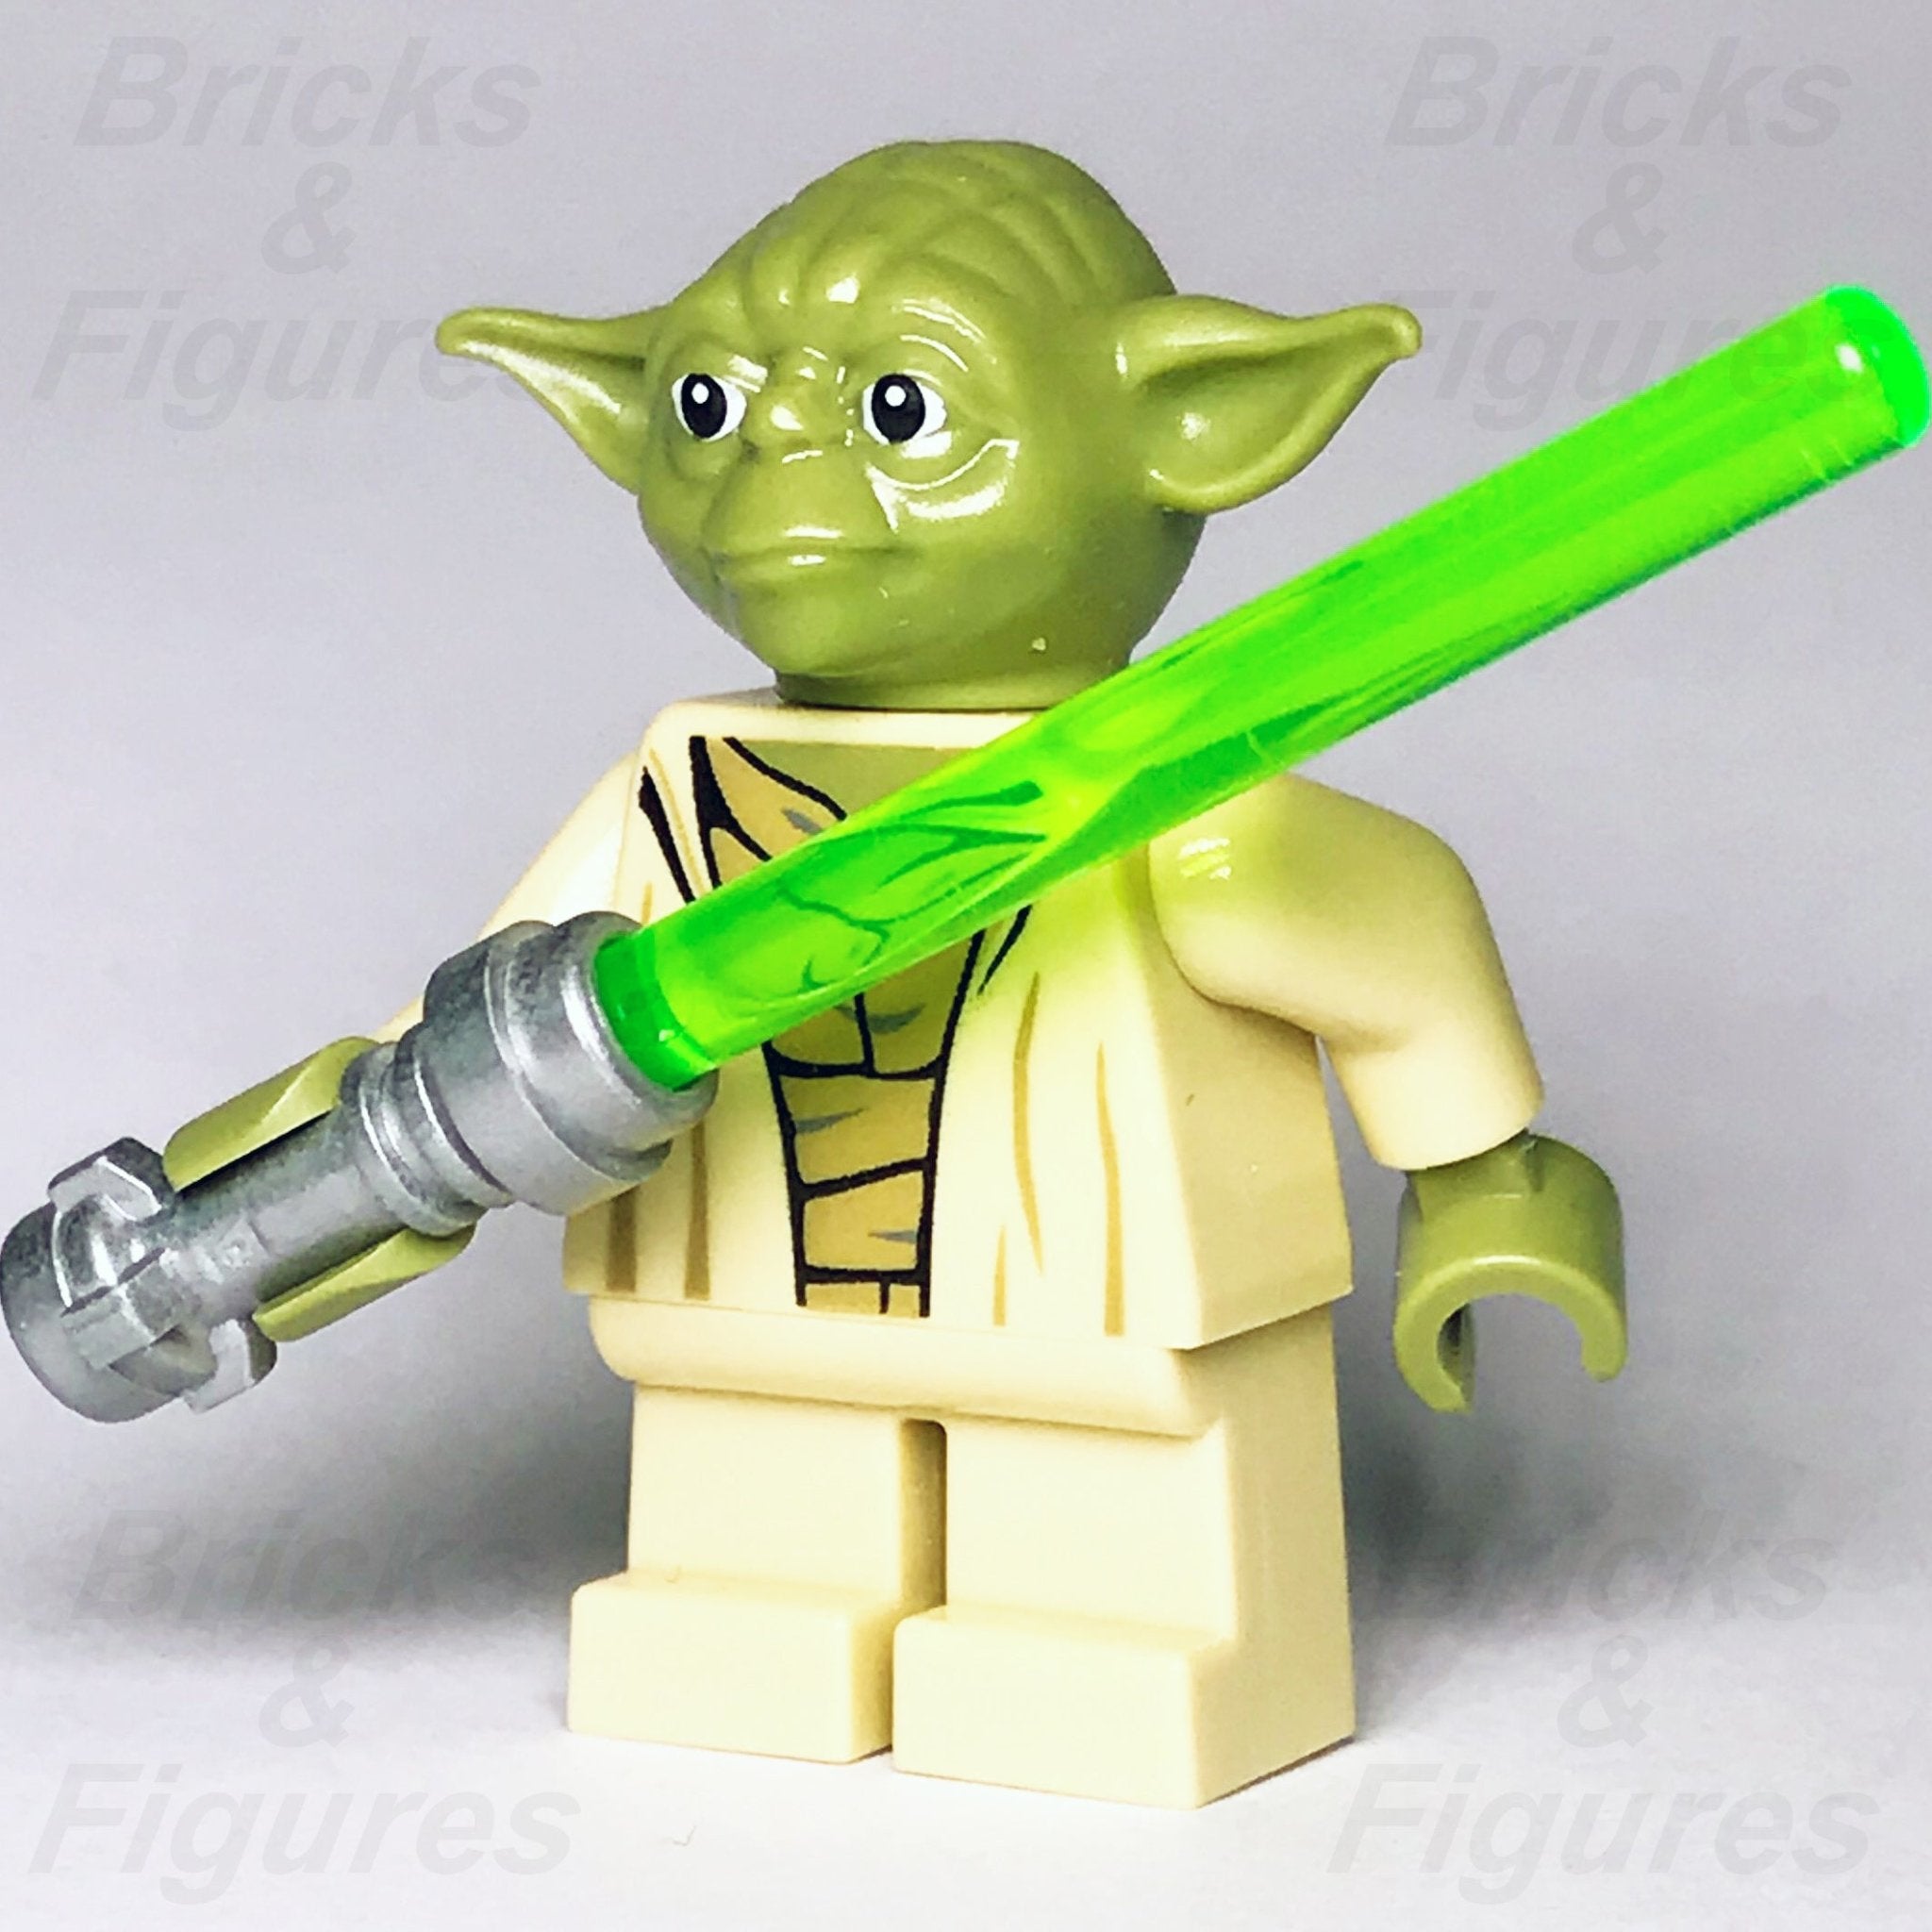 LEGO Yoda Minifigures